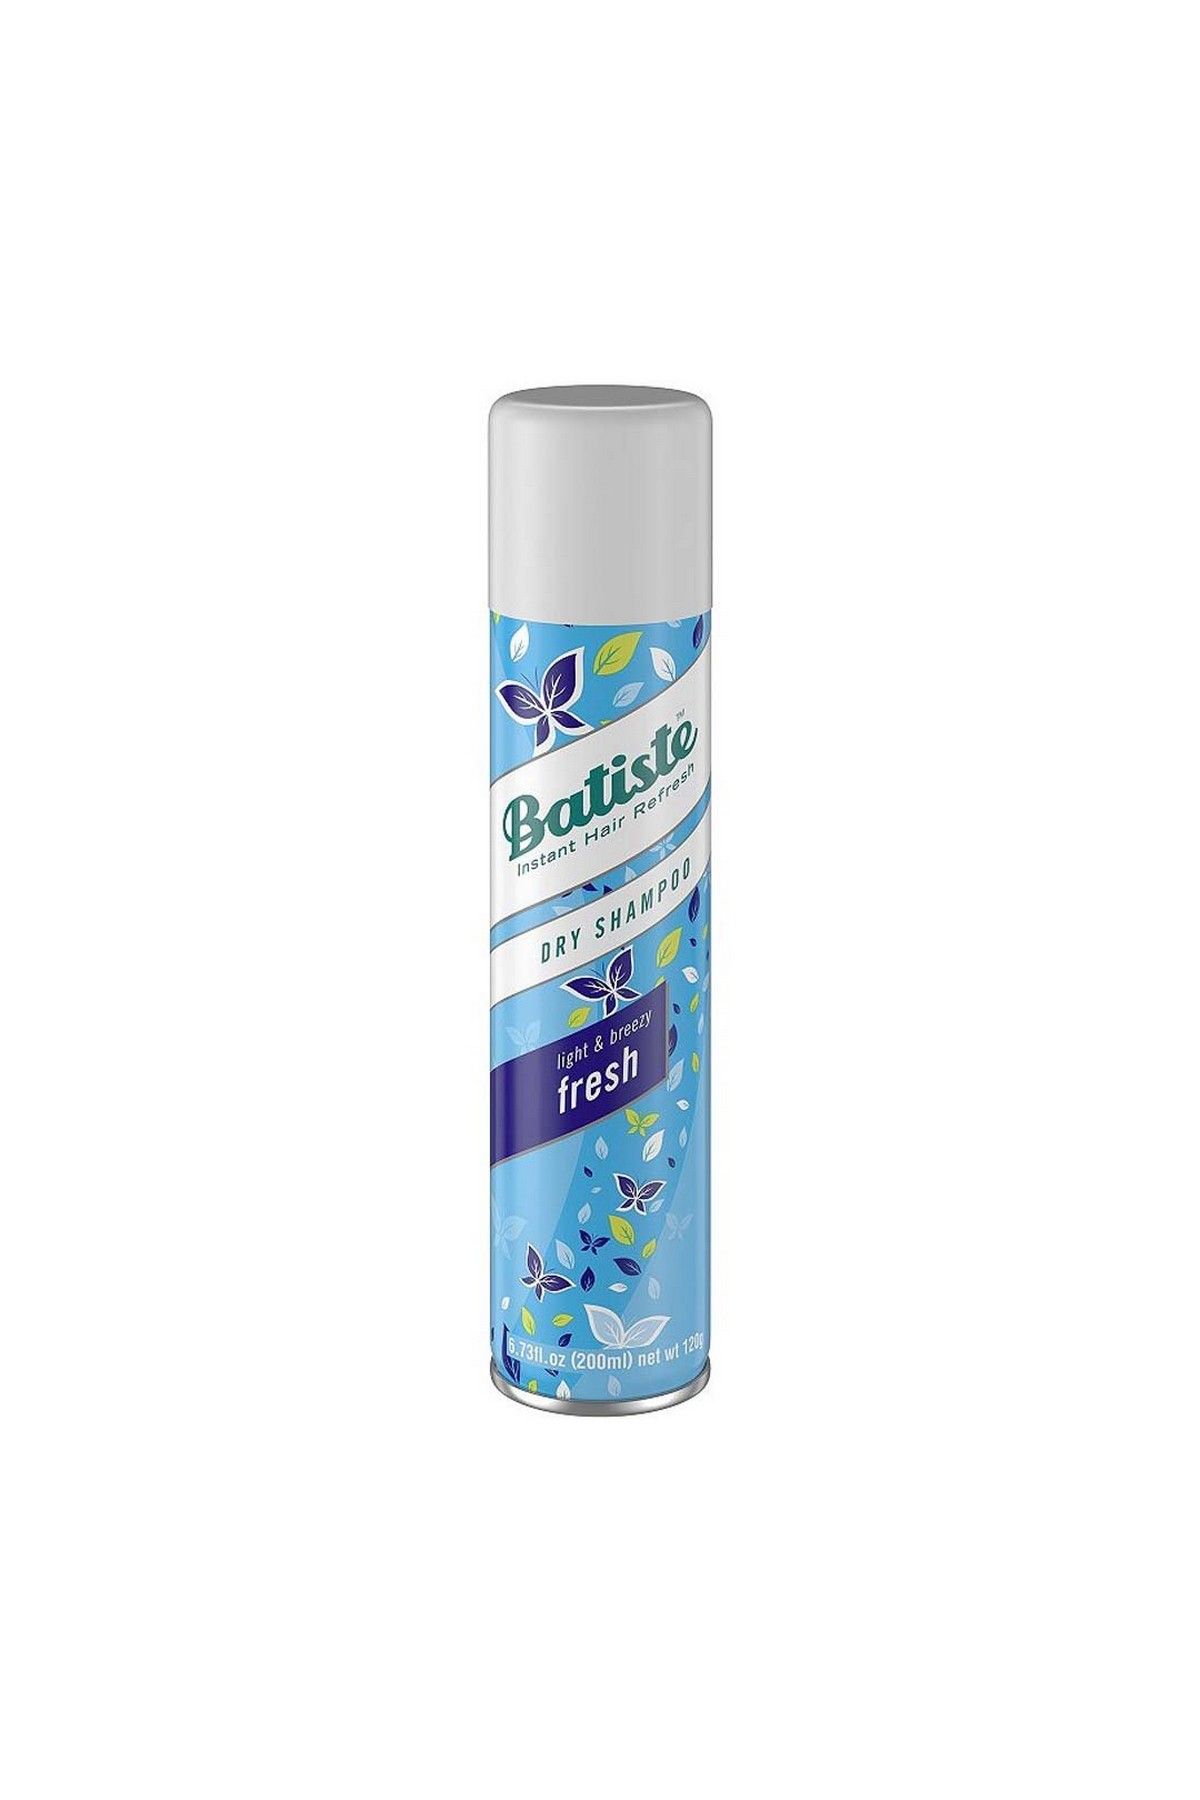 Batiste - Dry Shampoo Light & Breezy Fresh (200Ml)